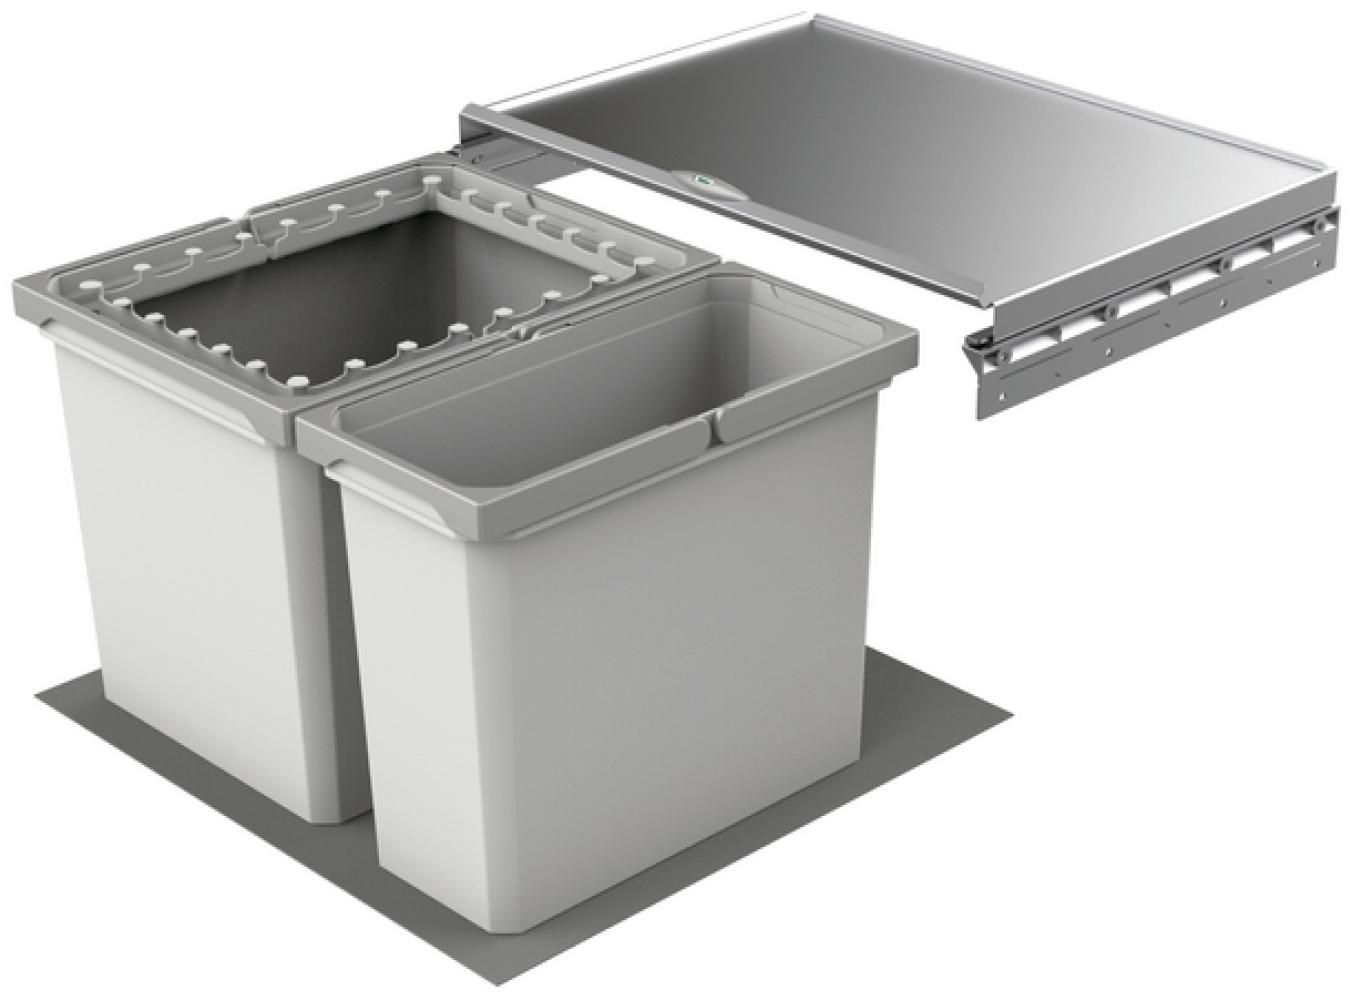 Abfallsorter Cox Box 2T/600-2 mit zweifach Trennung für 60 cm Schrankbreite / Abfalleimer / Abfallsammler / Mülleimer Bild 1